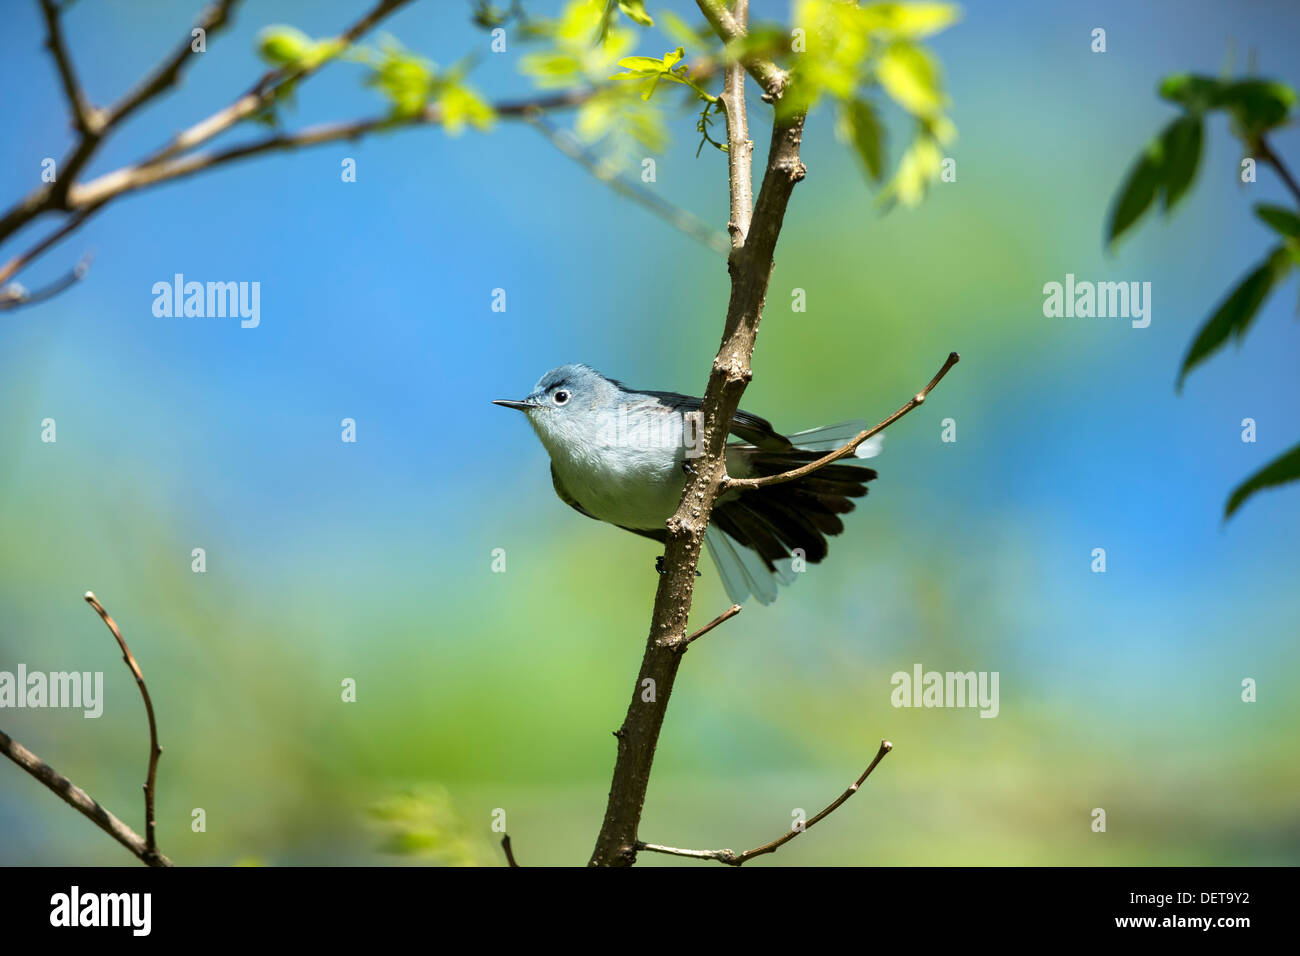 Petit oiseau chanteur perché sur une branche avec arrière-plan agréable - Gobemoucheron gris-bleu Polioptila caerulea Banque D'Images